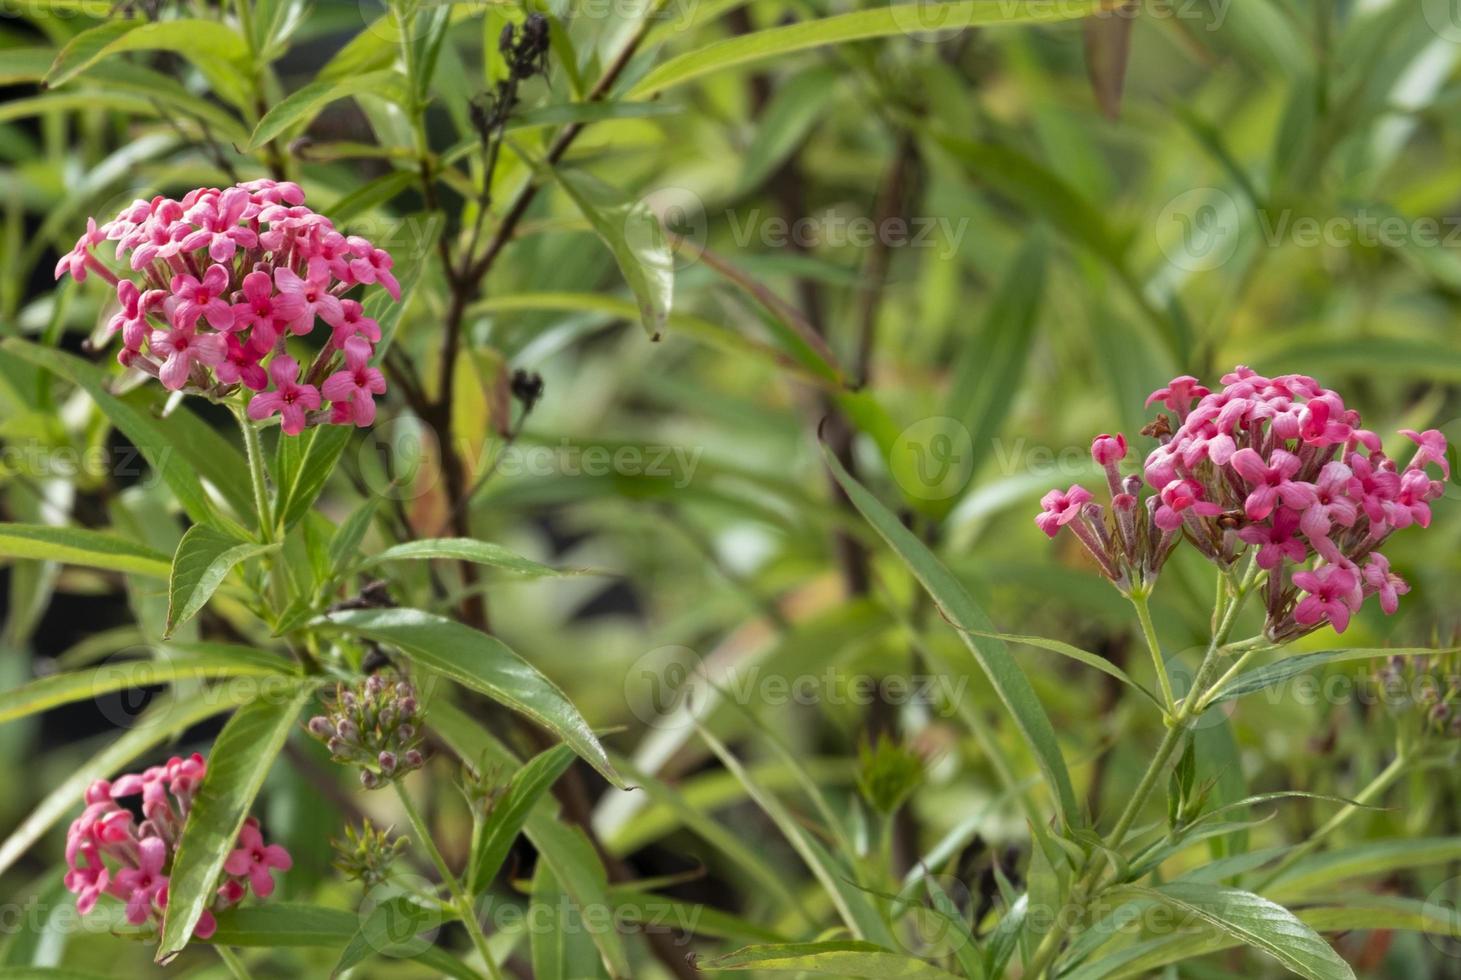 frischer schöner blumenstrauß rosa blütenknospe und blüht mit grünen blättern im natürlichen botanischen garten foto